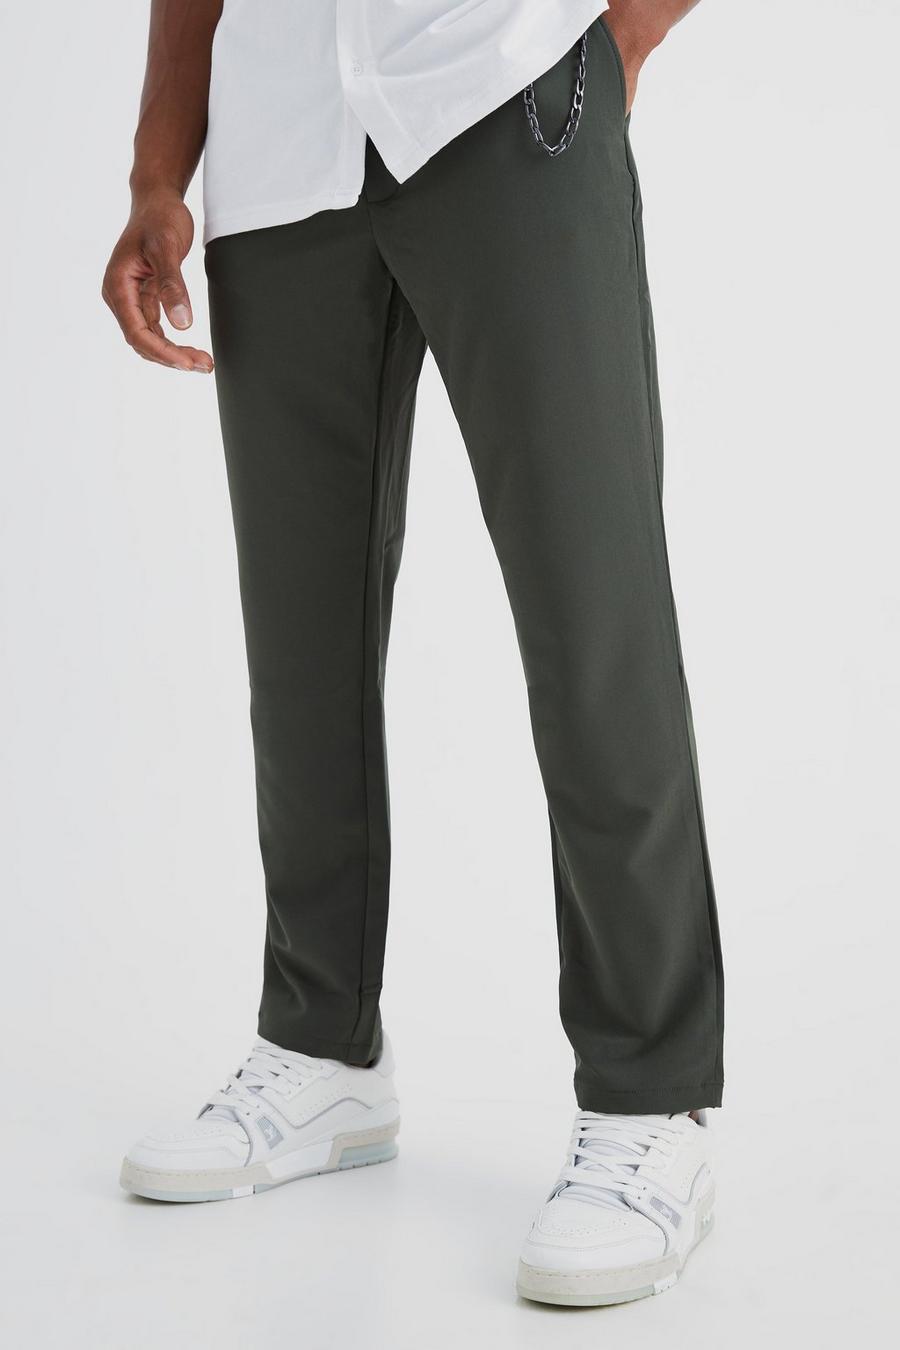 Elastische Slim-Fit Hose mit 4-Way Stretch, Khaki